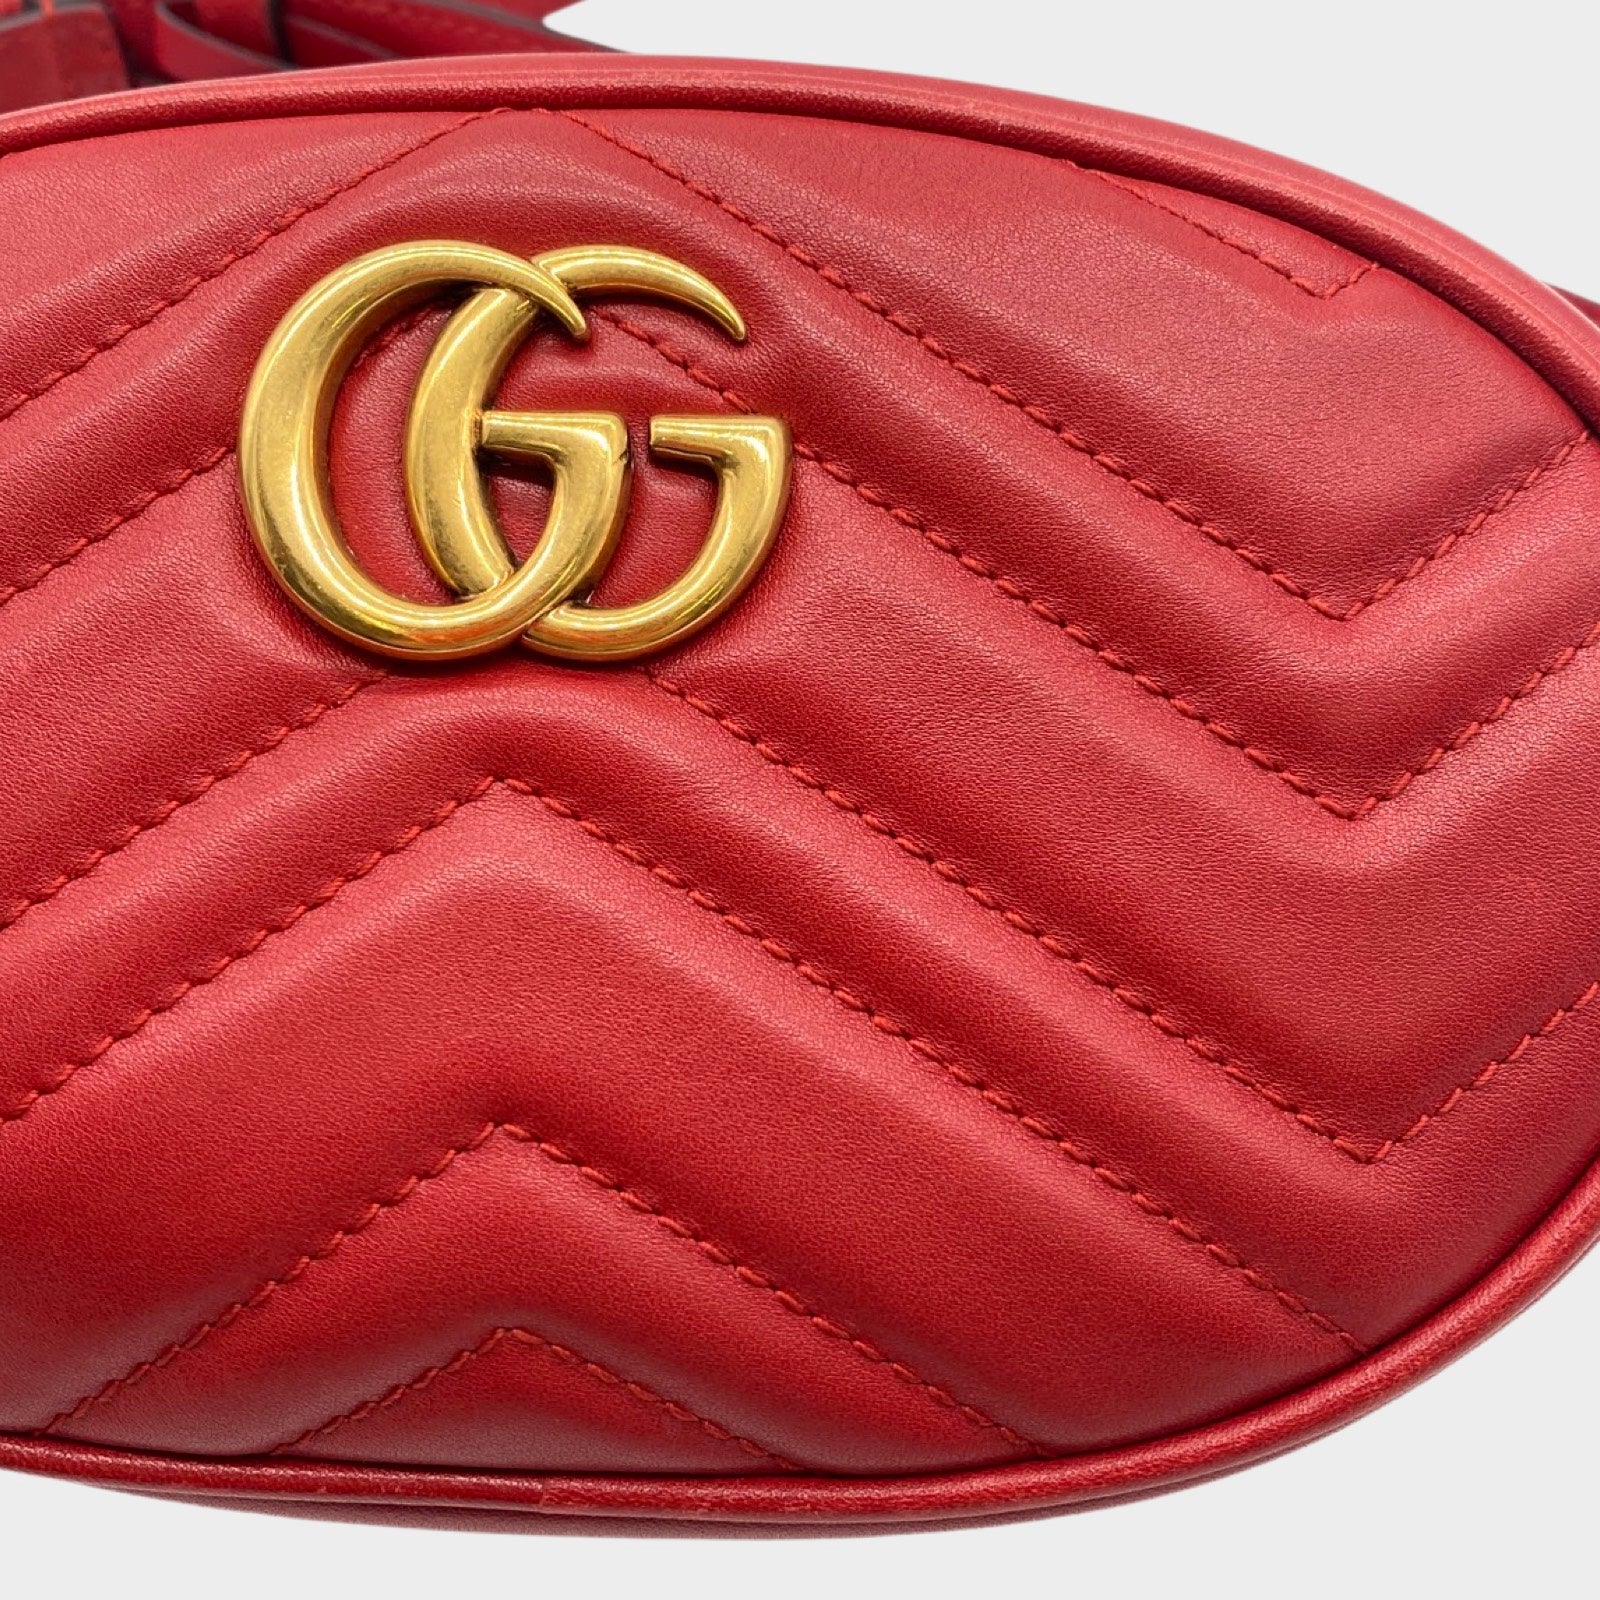 Gucci Marmont Camera Bag | Gucci marmont camera bag, Gucci, Gucci marmont